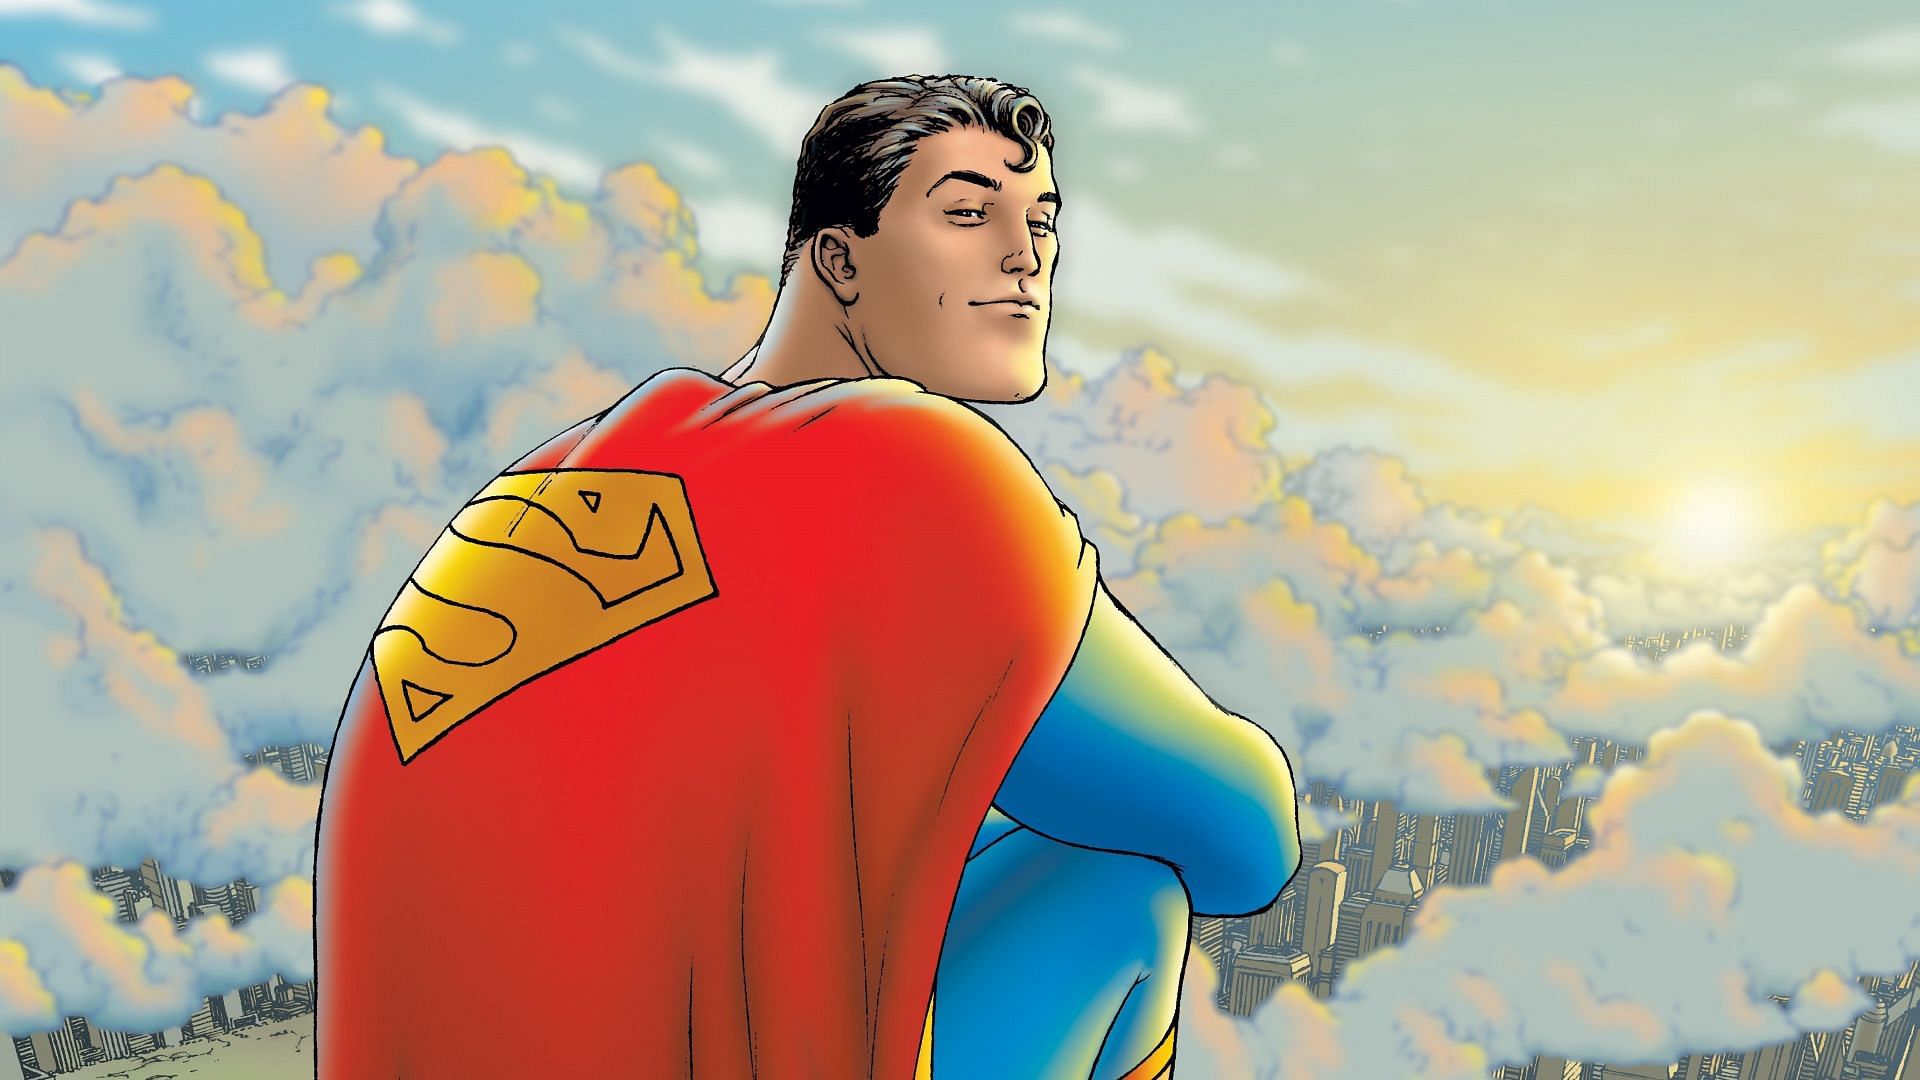 لوگو و نام فیلم جدید سوپرمن در ابتدای فیلمبرداری فاش شد